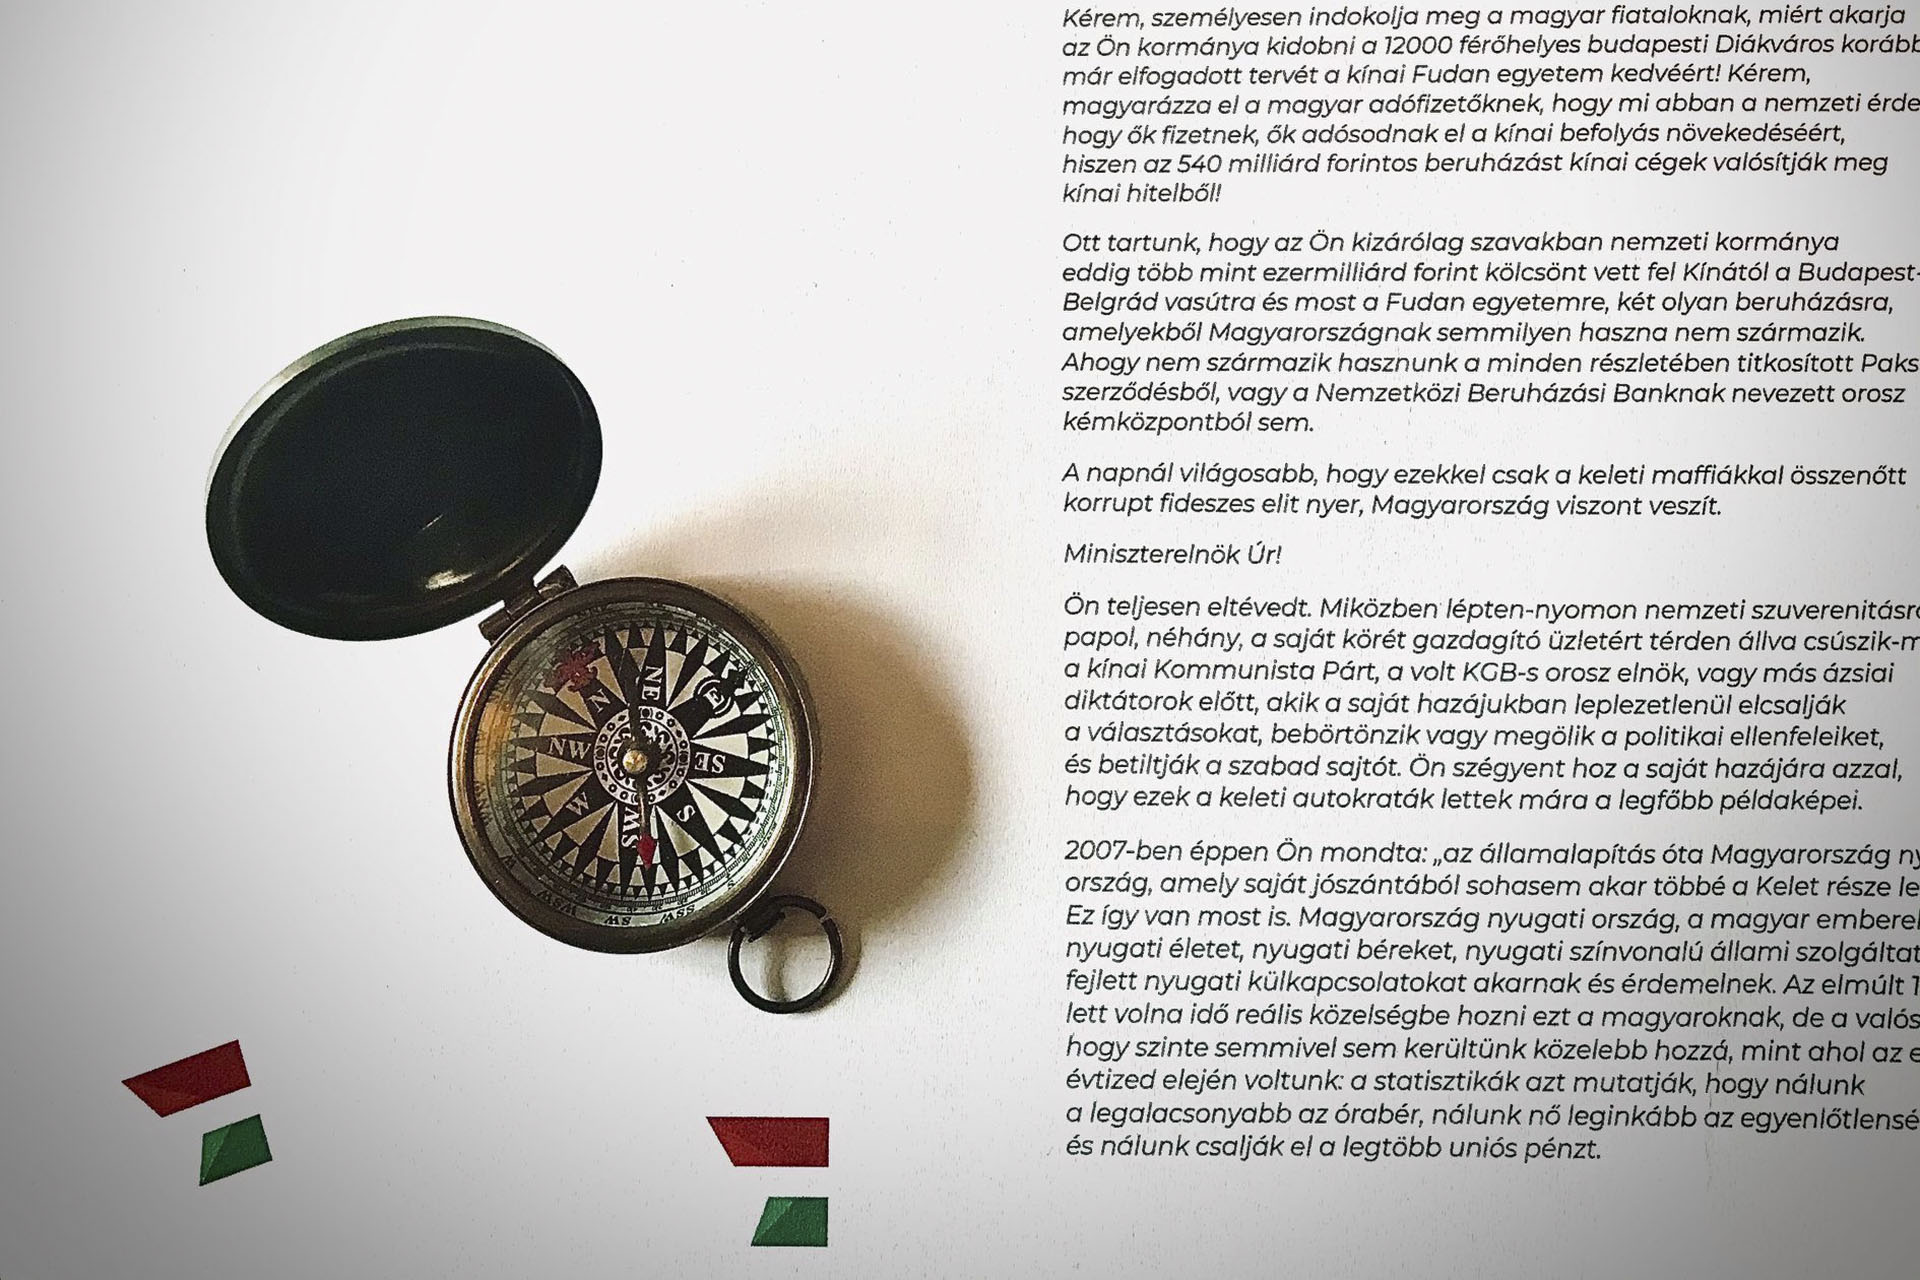 A Momentum iránytűt küldött Orbánnak, hogy lássa, merre van nyugat